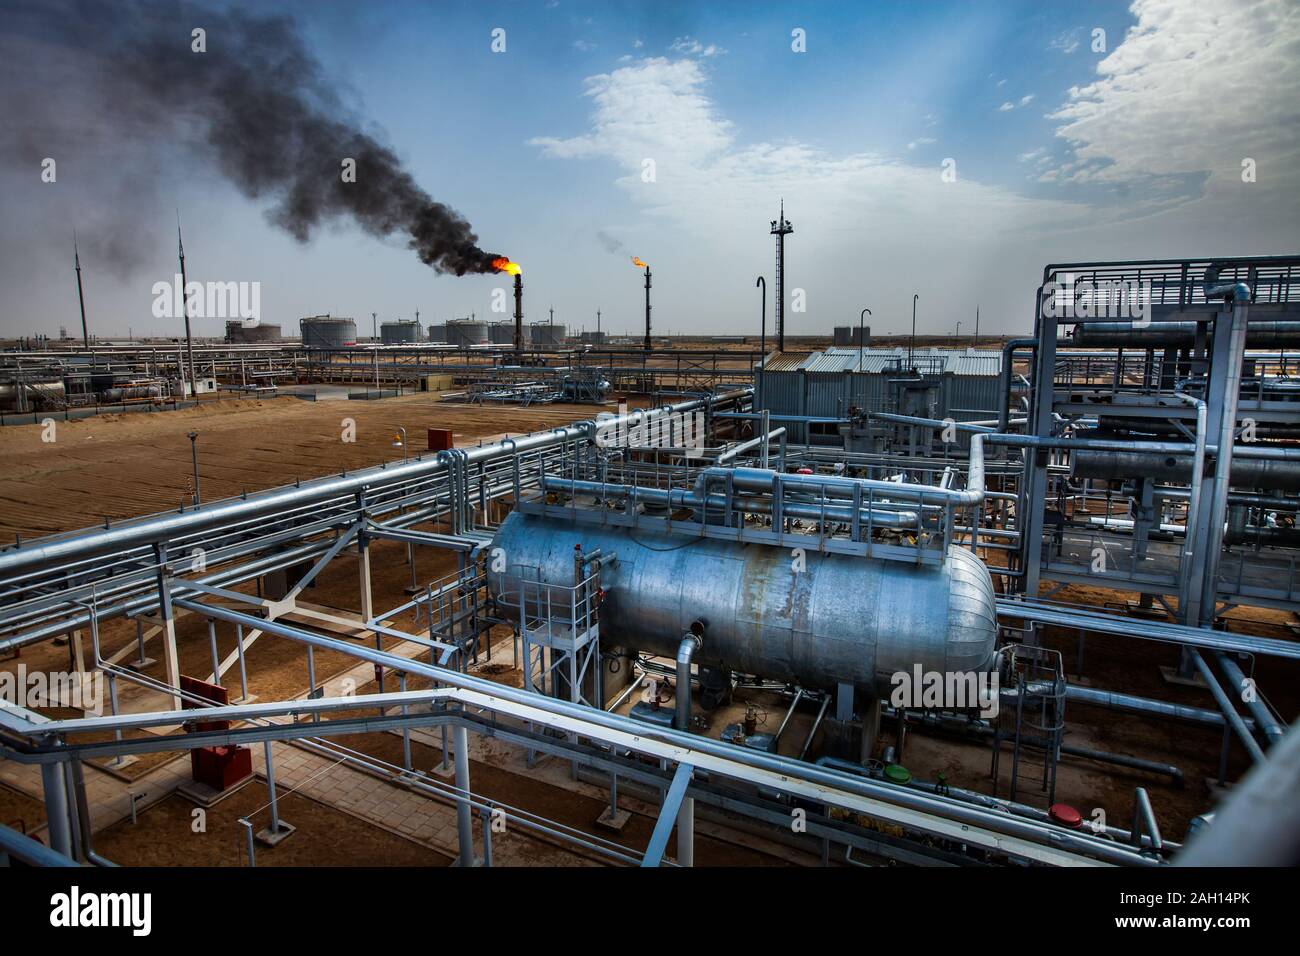 Grauen Rohre und orange Brennen Gasbrenner einer Ölraffinerie in der gelben Wüste. Blauer Himmel mit Wolken. Panorama Ansicht Stockfoto